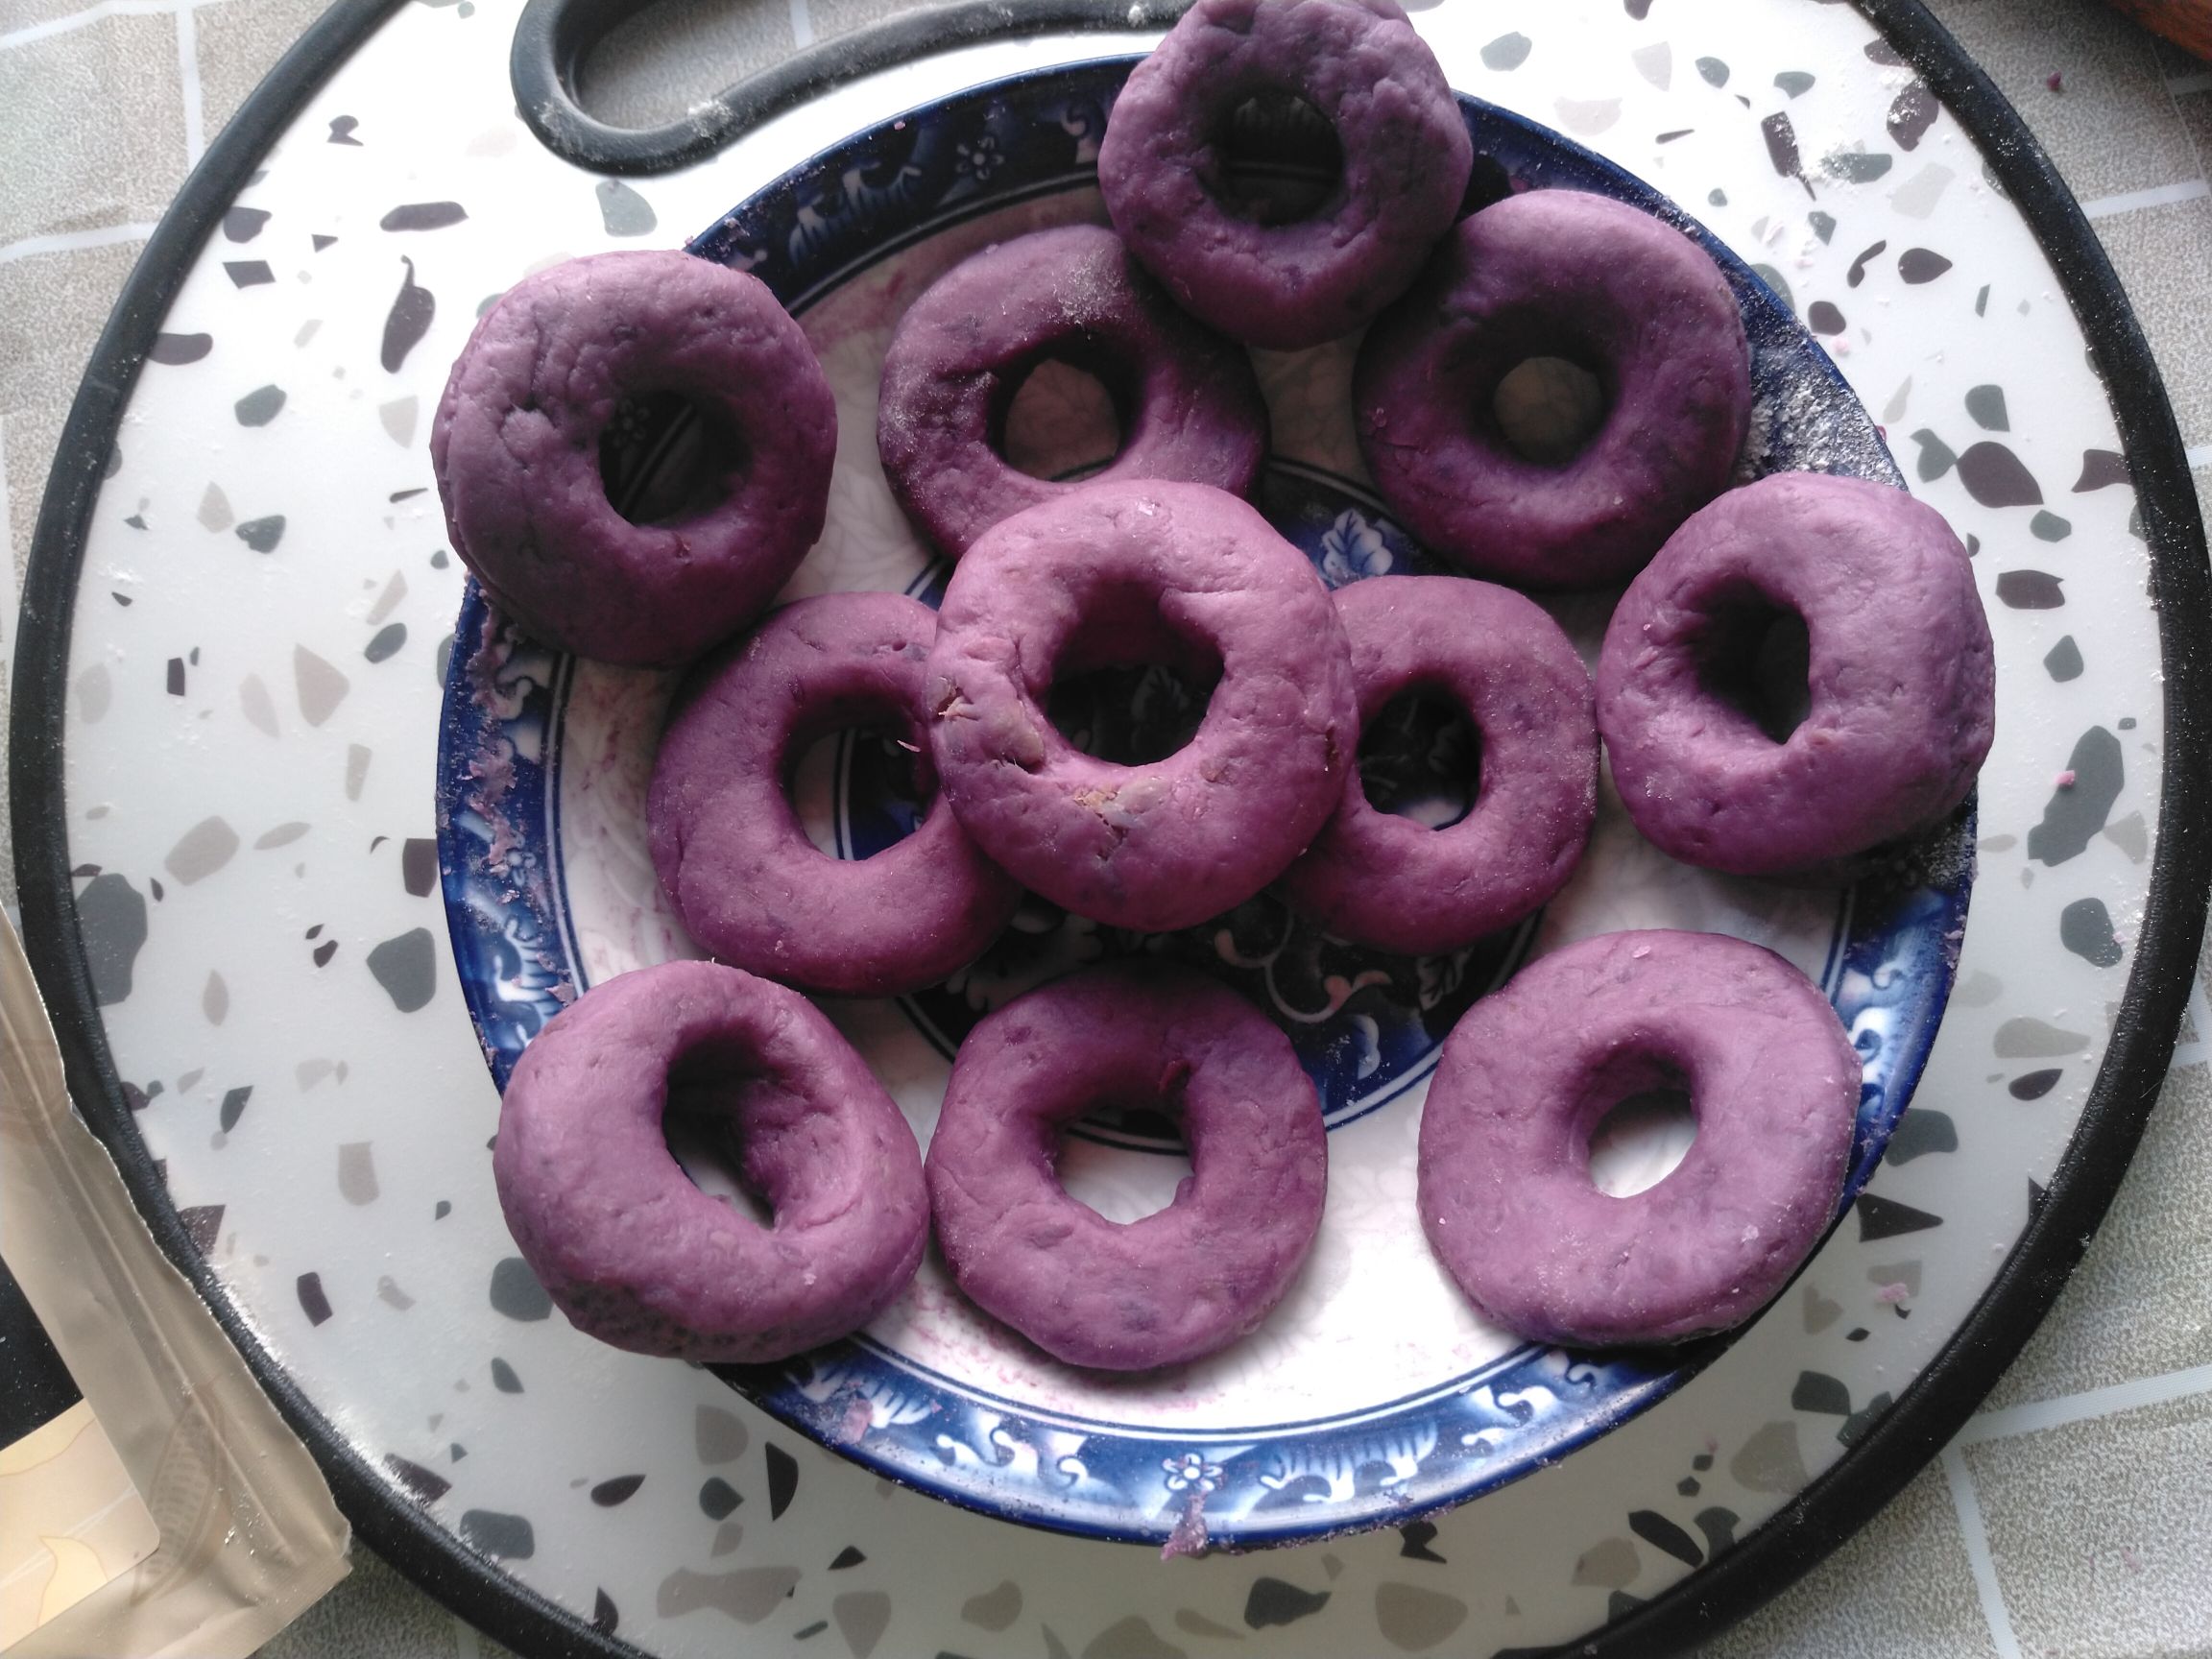 Favna Donuts recipe